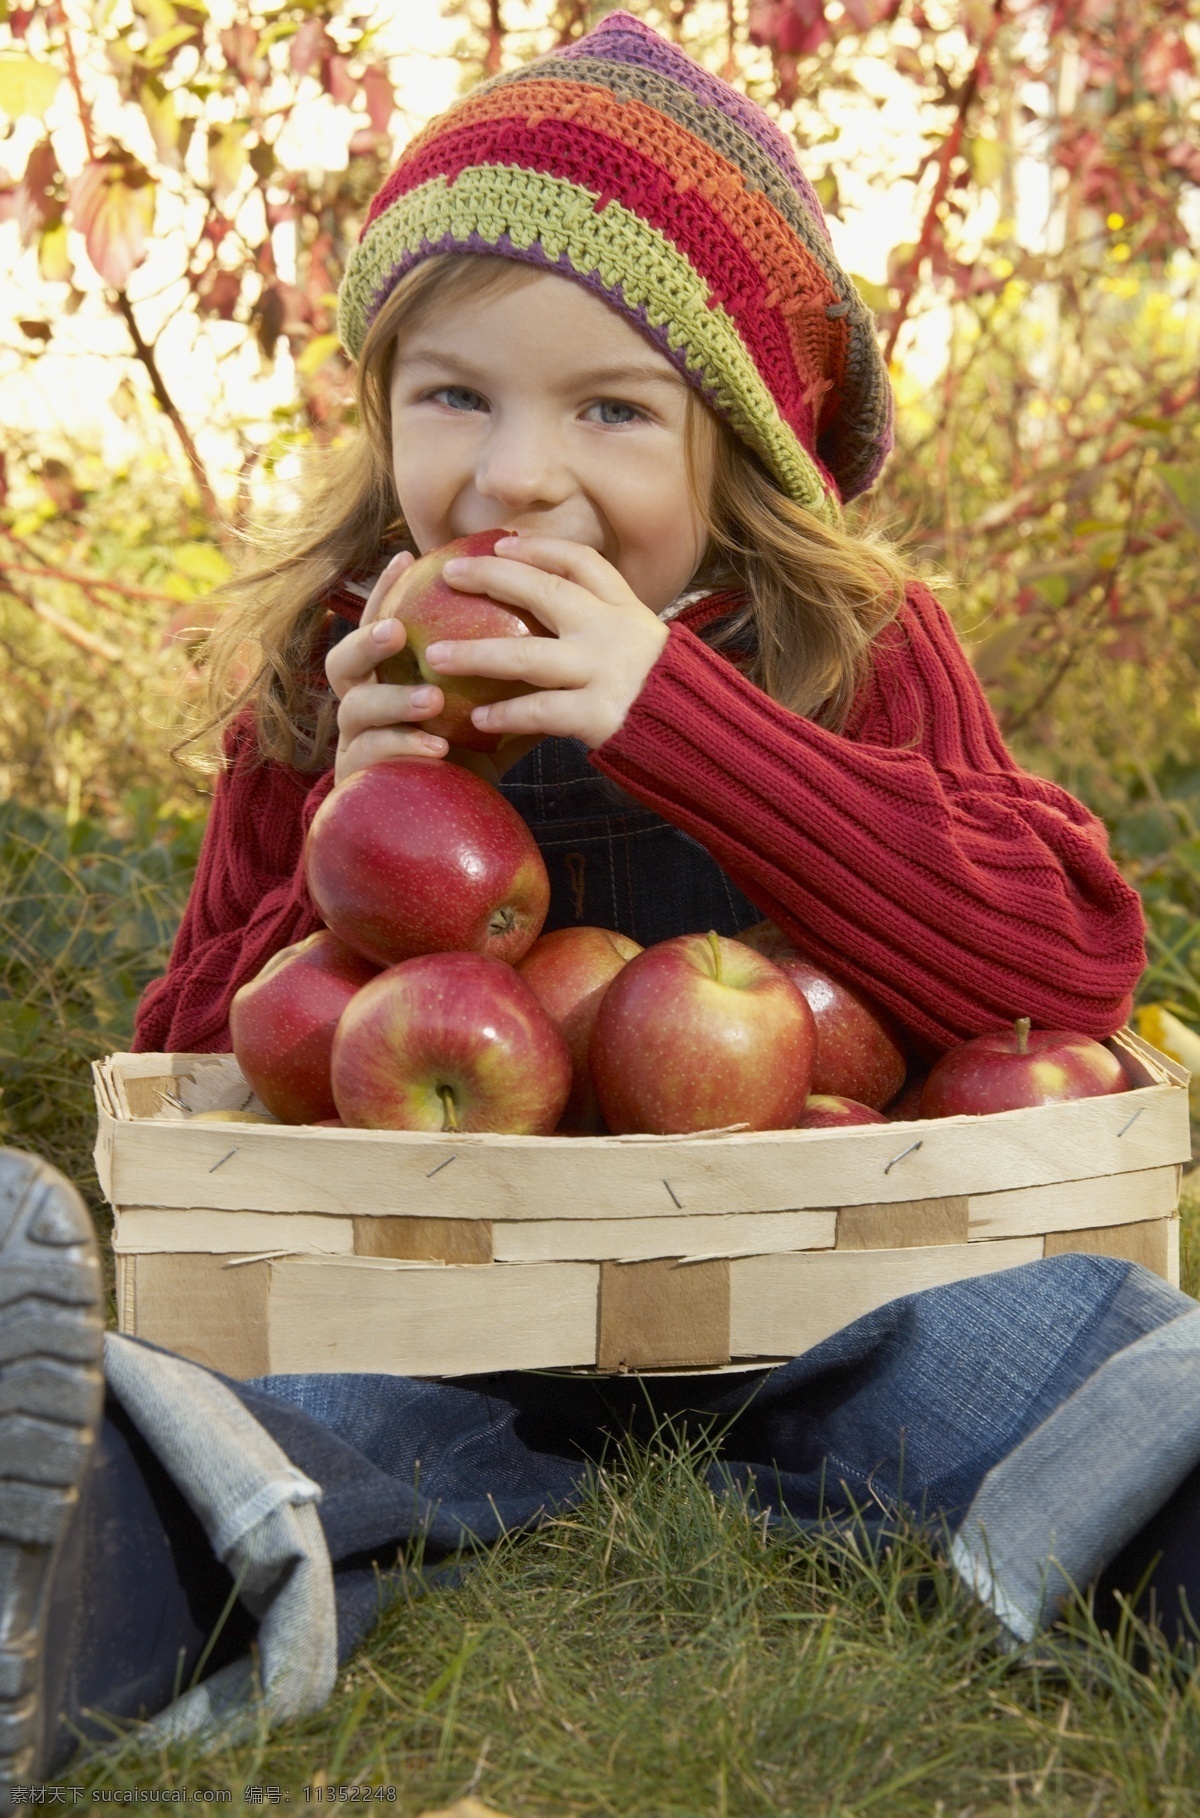 吃 苹果 小女孩 吃苹果 水果 女孩 人物 人物摄影 人物素材 儿童 儿童摄影 小孩 儿童图片 人物图片